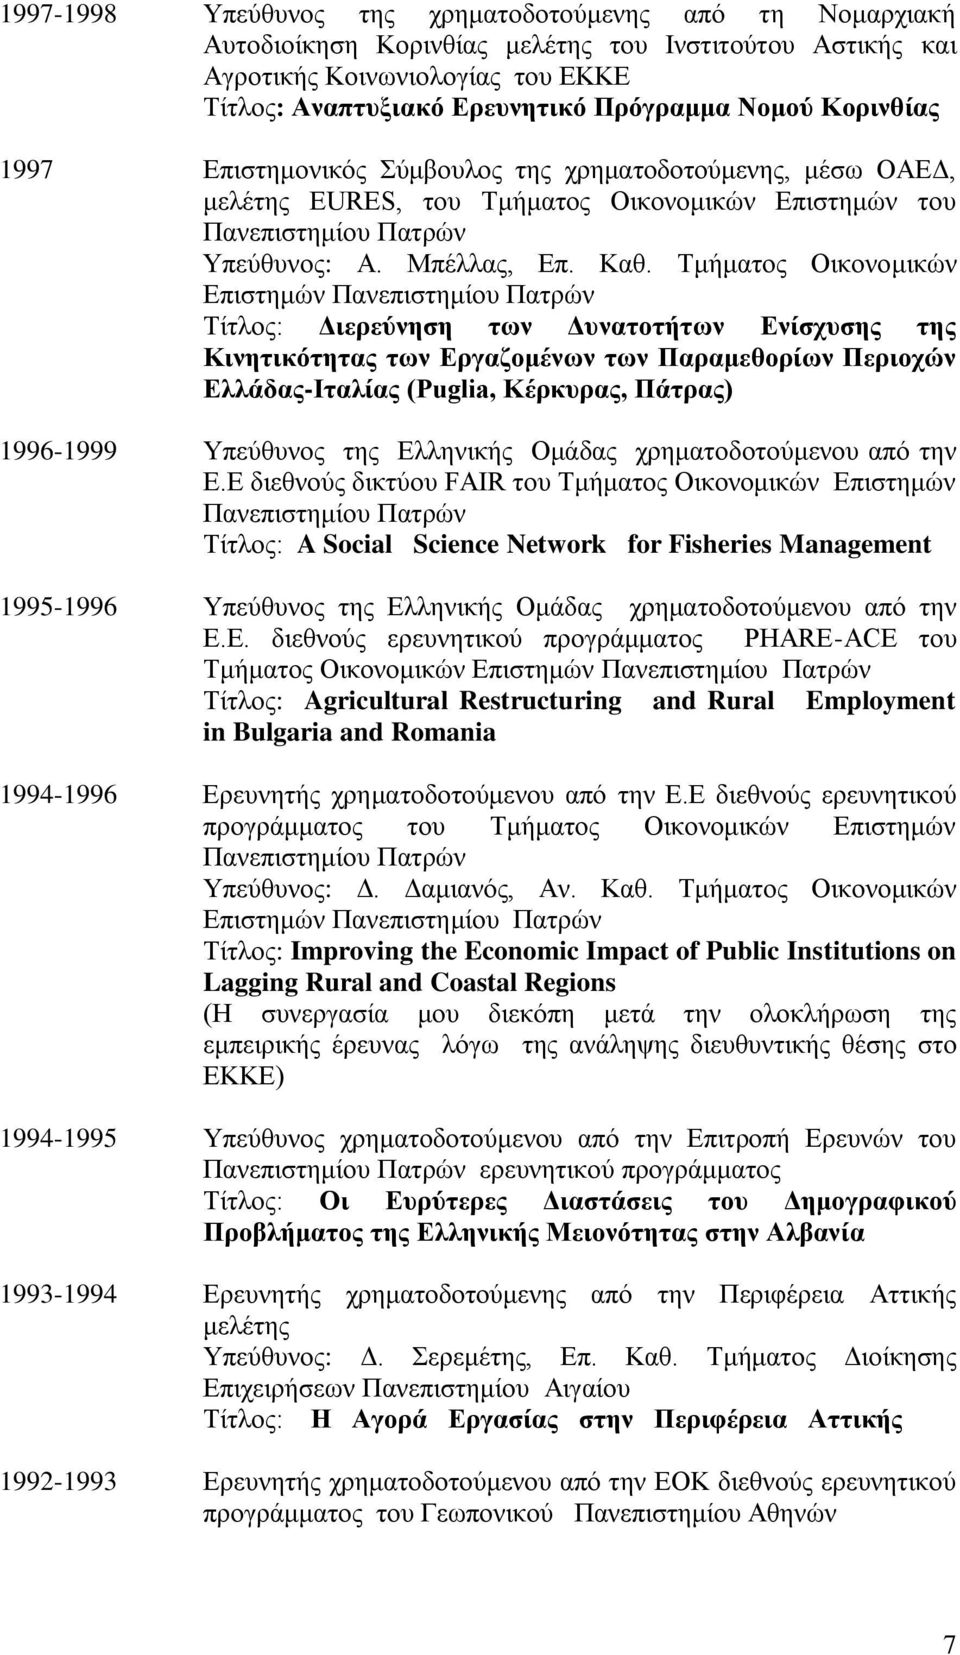 Τμήματος Οικονομικών Επιστημών Πανεπιστημίου Πατρών Τίτλος: Διερεύνηση των Δυνατοτήτων Ενίσχυσης της Κινητικότητας των Εργαζομένων των Παραμεθορίων Περιοχών Ελλάδας-Ιταλίας (Puglia, Κέρκυρας, Πάτρας)